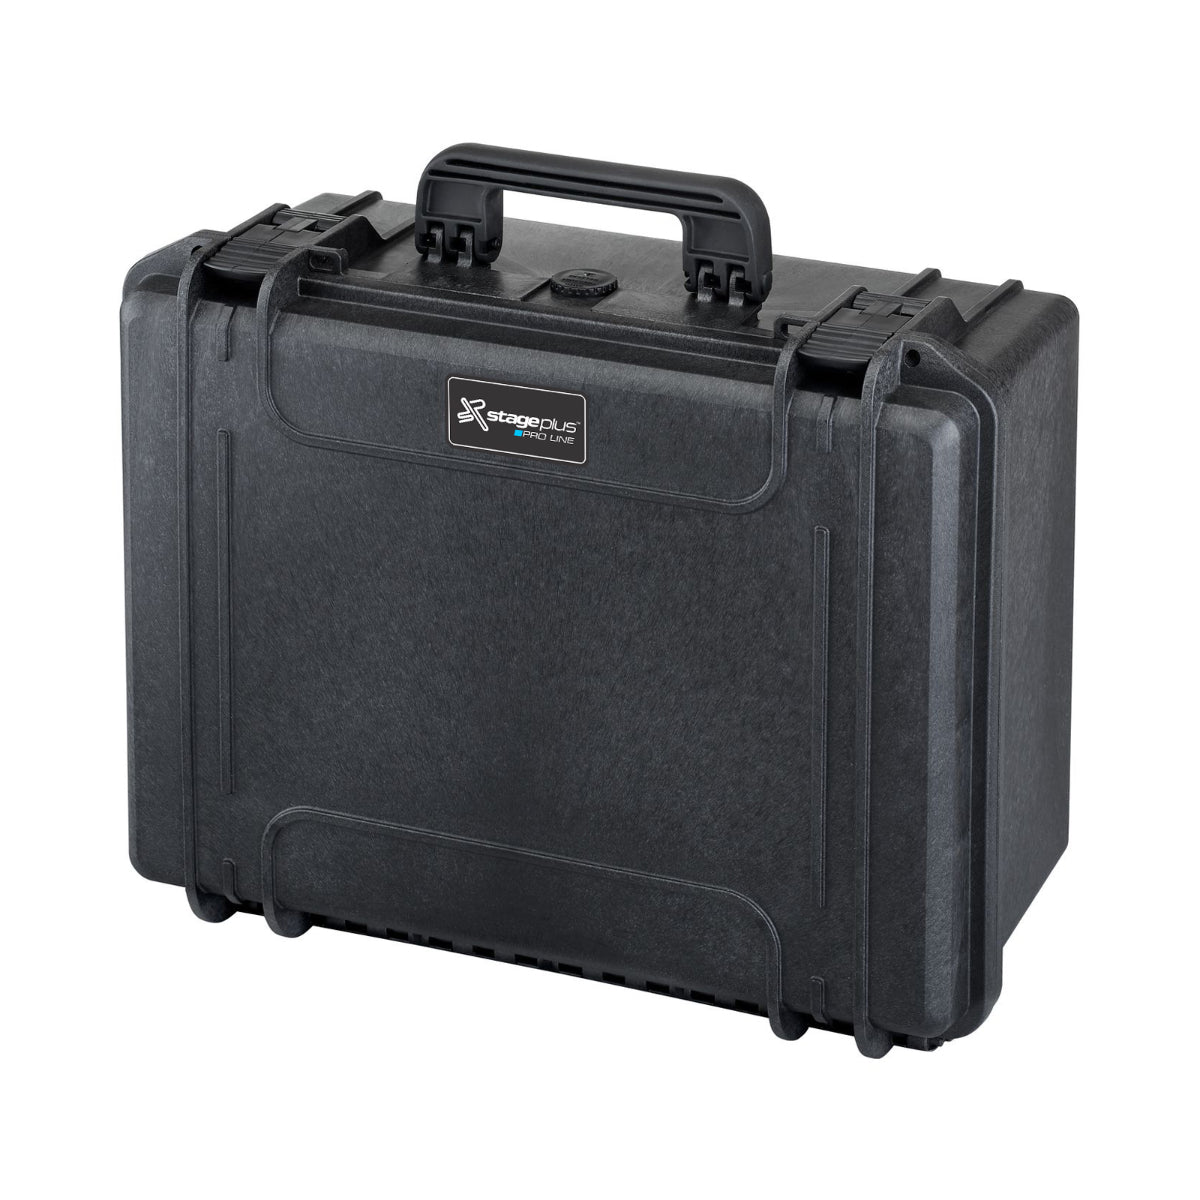 SP PRO 380H160LAPTOP Black Carry Case, Cubed Foam + Laptop Holder, ID: L380xW270xH160mm